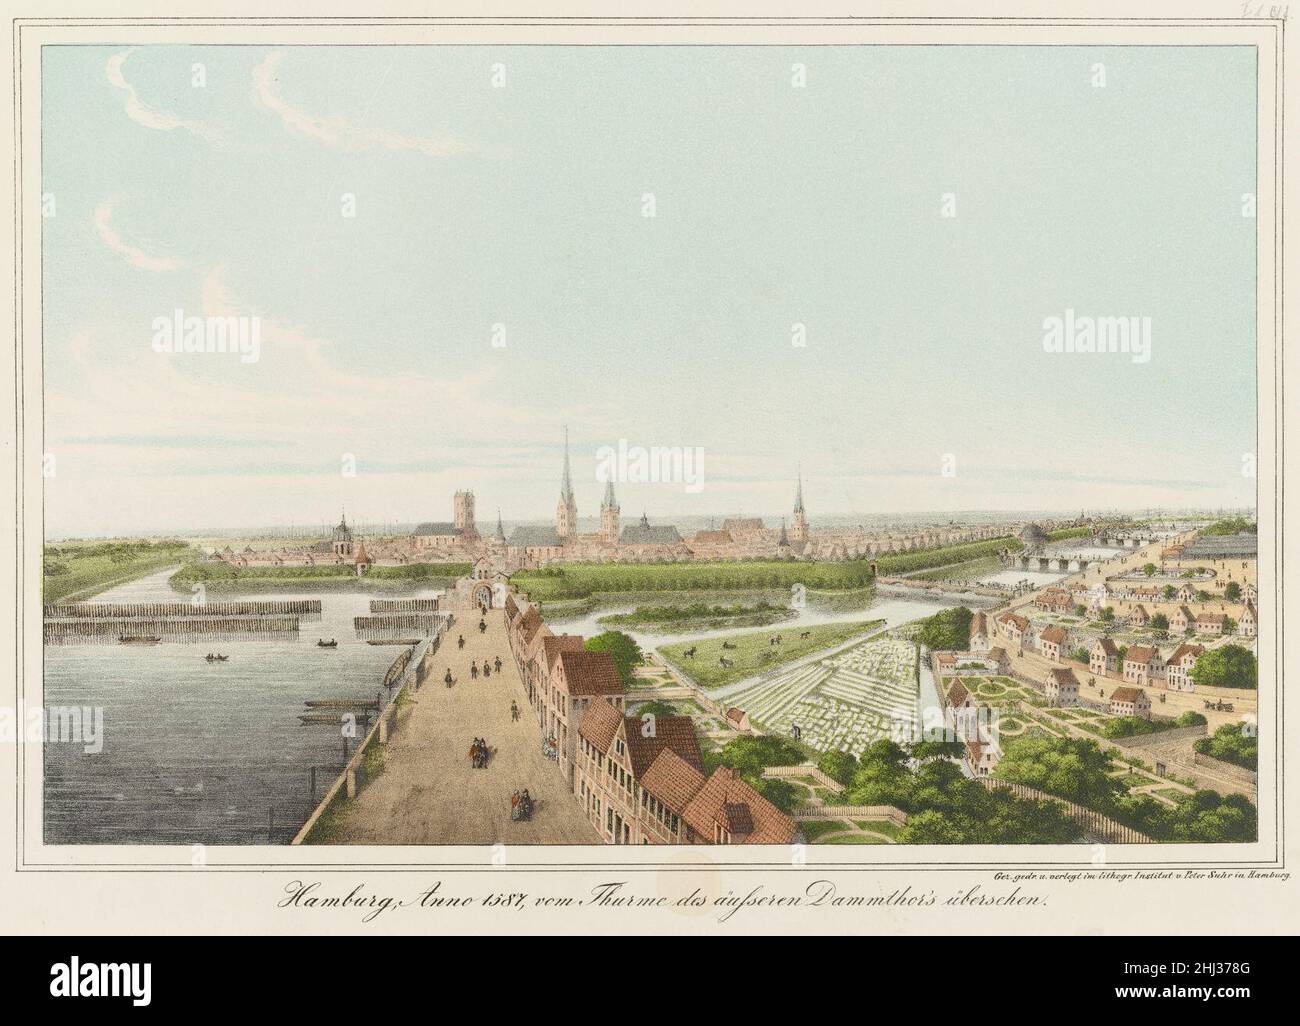 PPN790317567 Hamburg, Anno 1587 vom Thurme des äußeren Dammthors übersehen (1838). Stock Photo